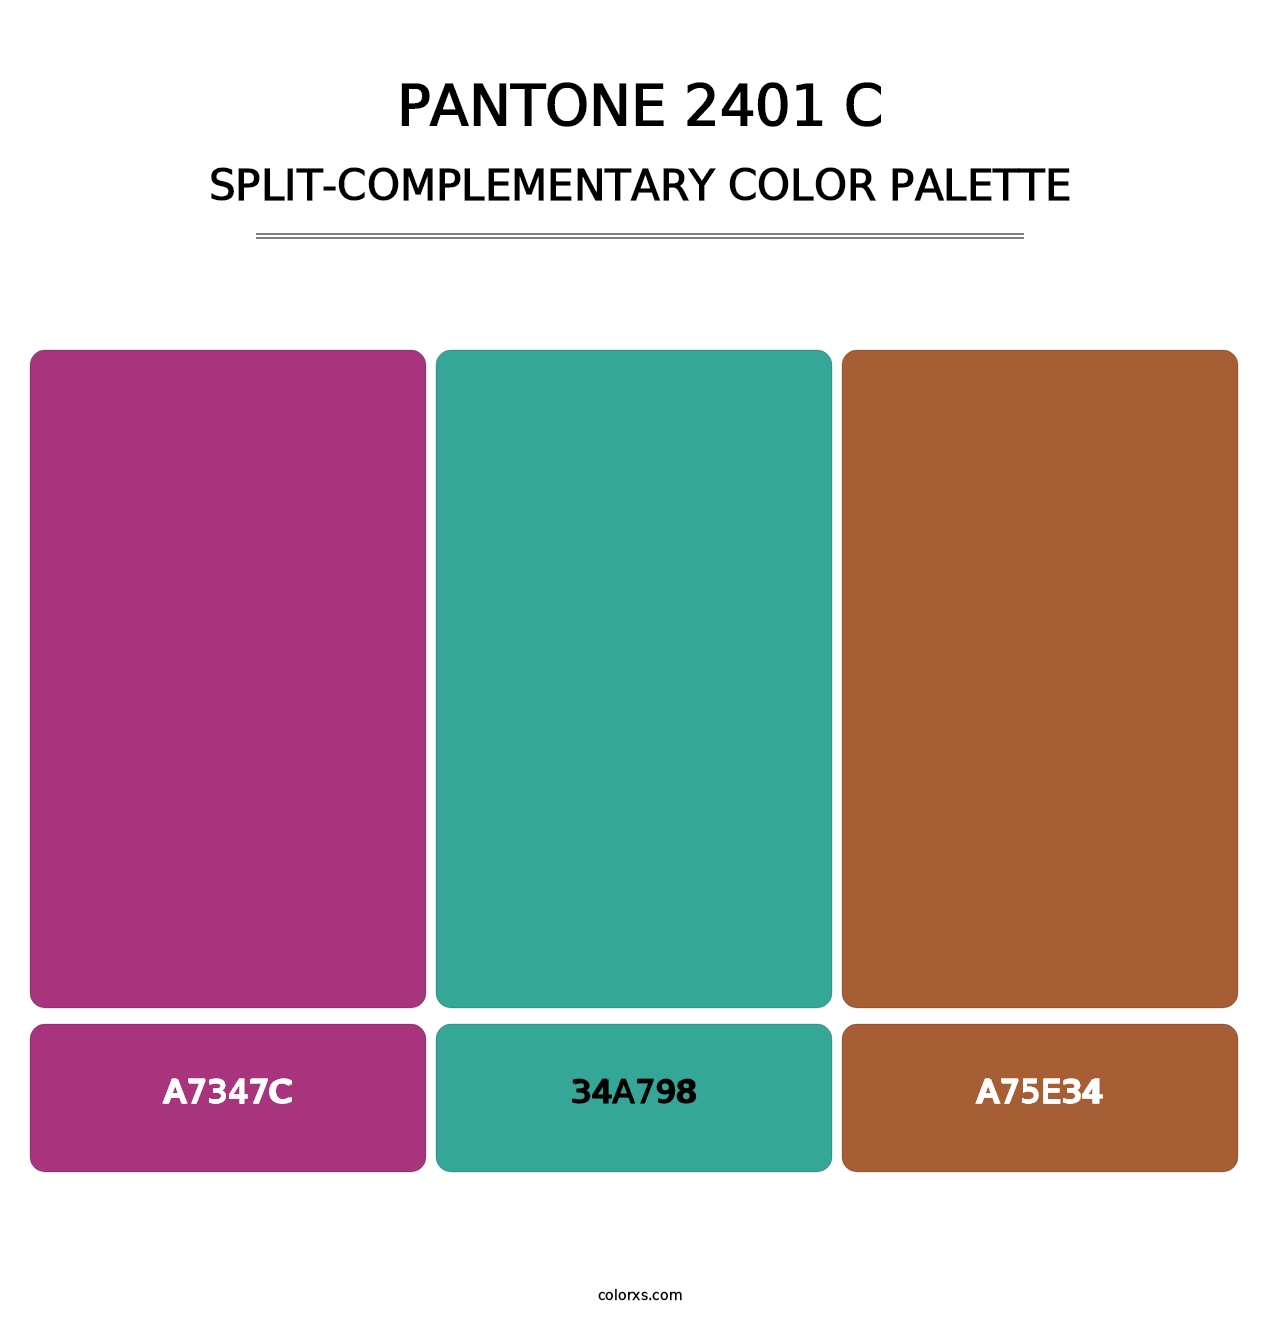 PANTONE 2401 C - Split-Complementary Color Palette